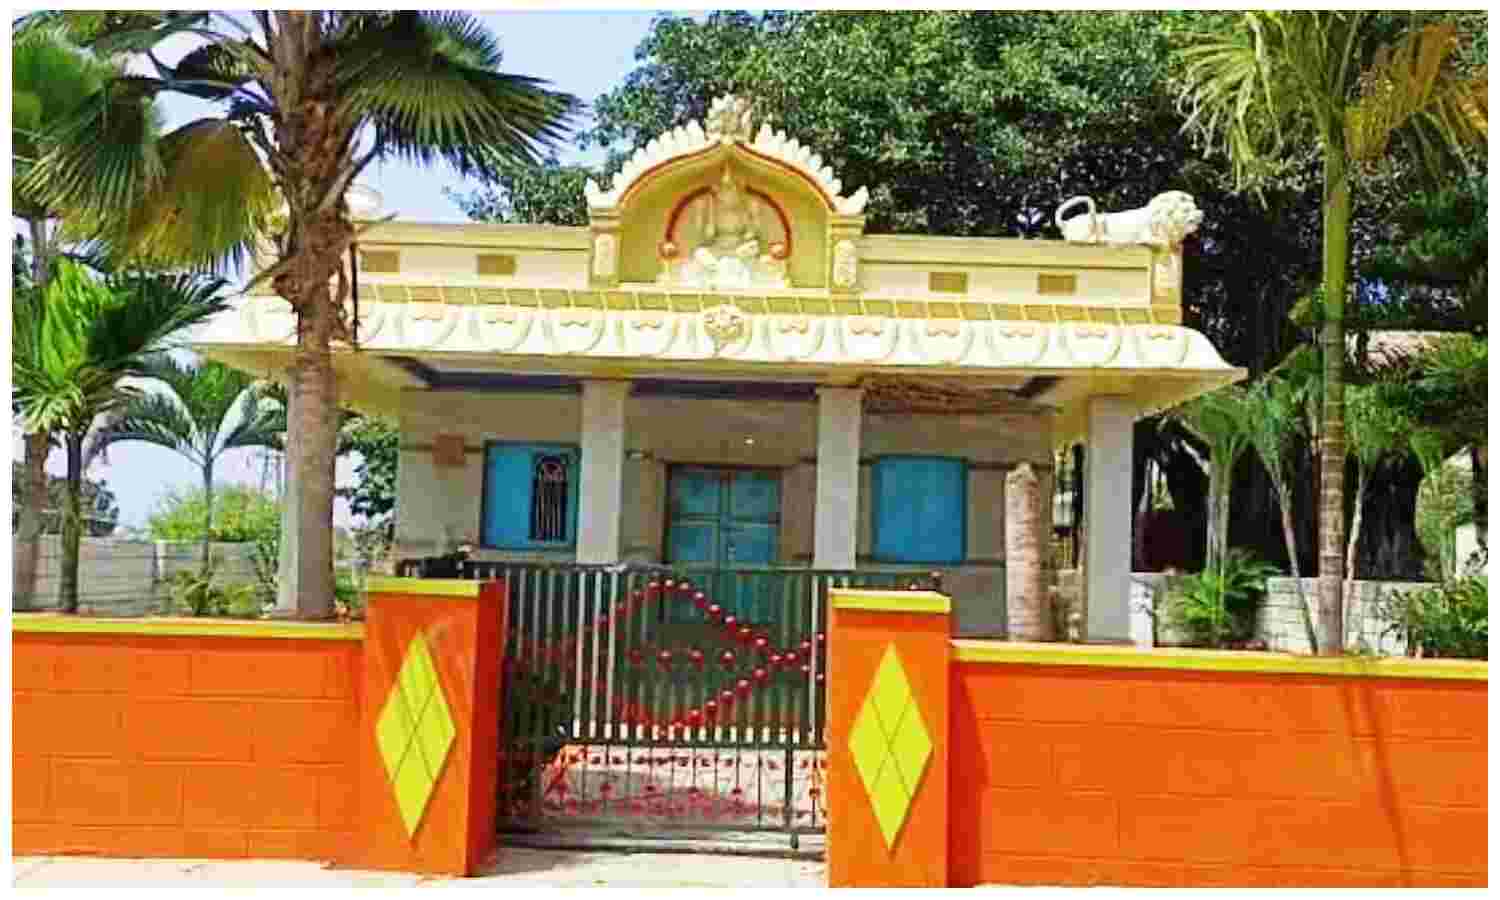 Karnataka News : दलित बच्चे ने भगवान की मूर्ति को छुआ तो पंचायत ने लगाया परिवार पर 60 हजार रुपए का जुर्माना